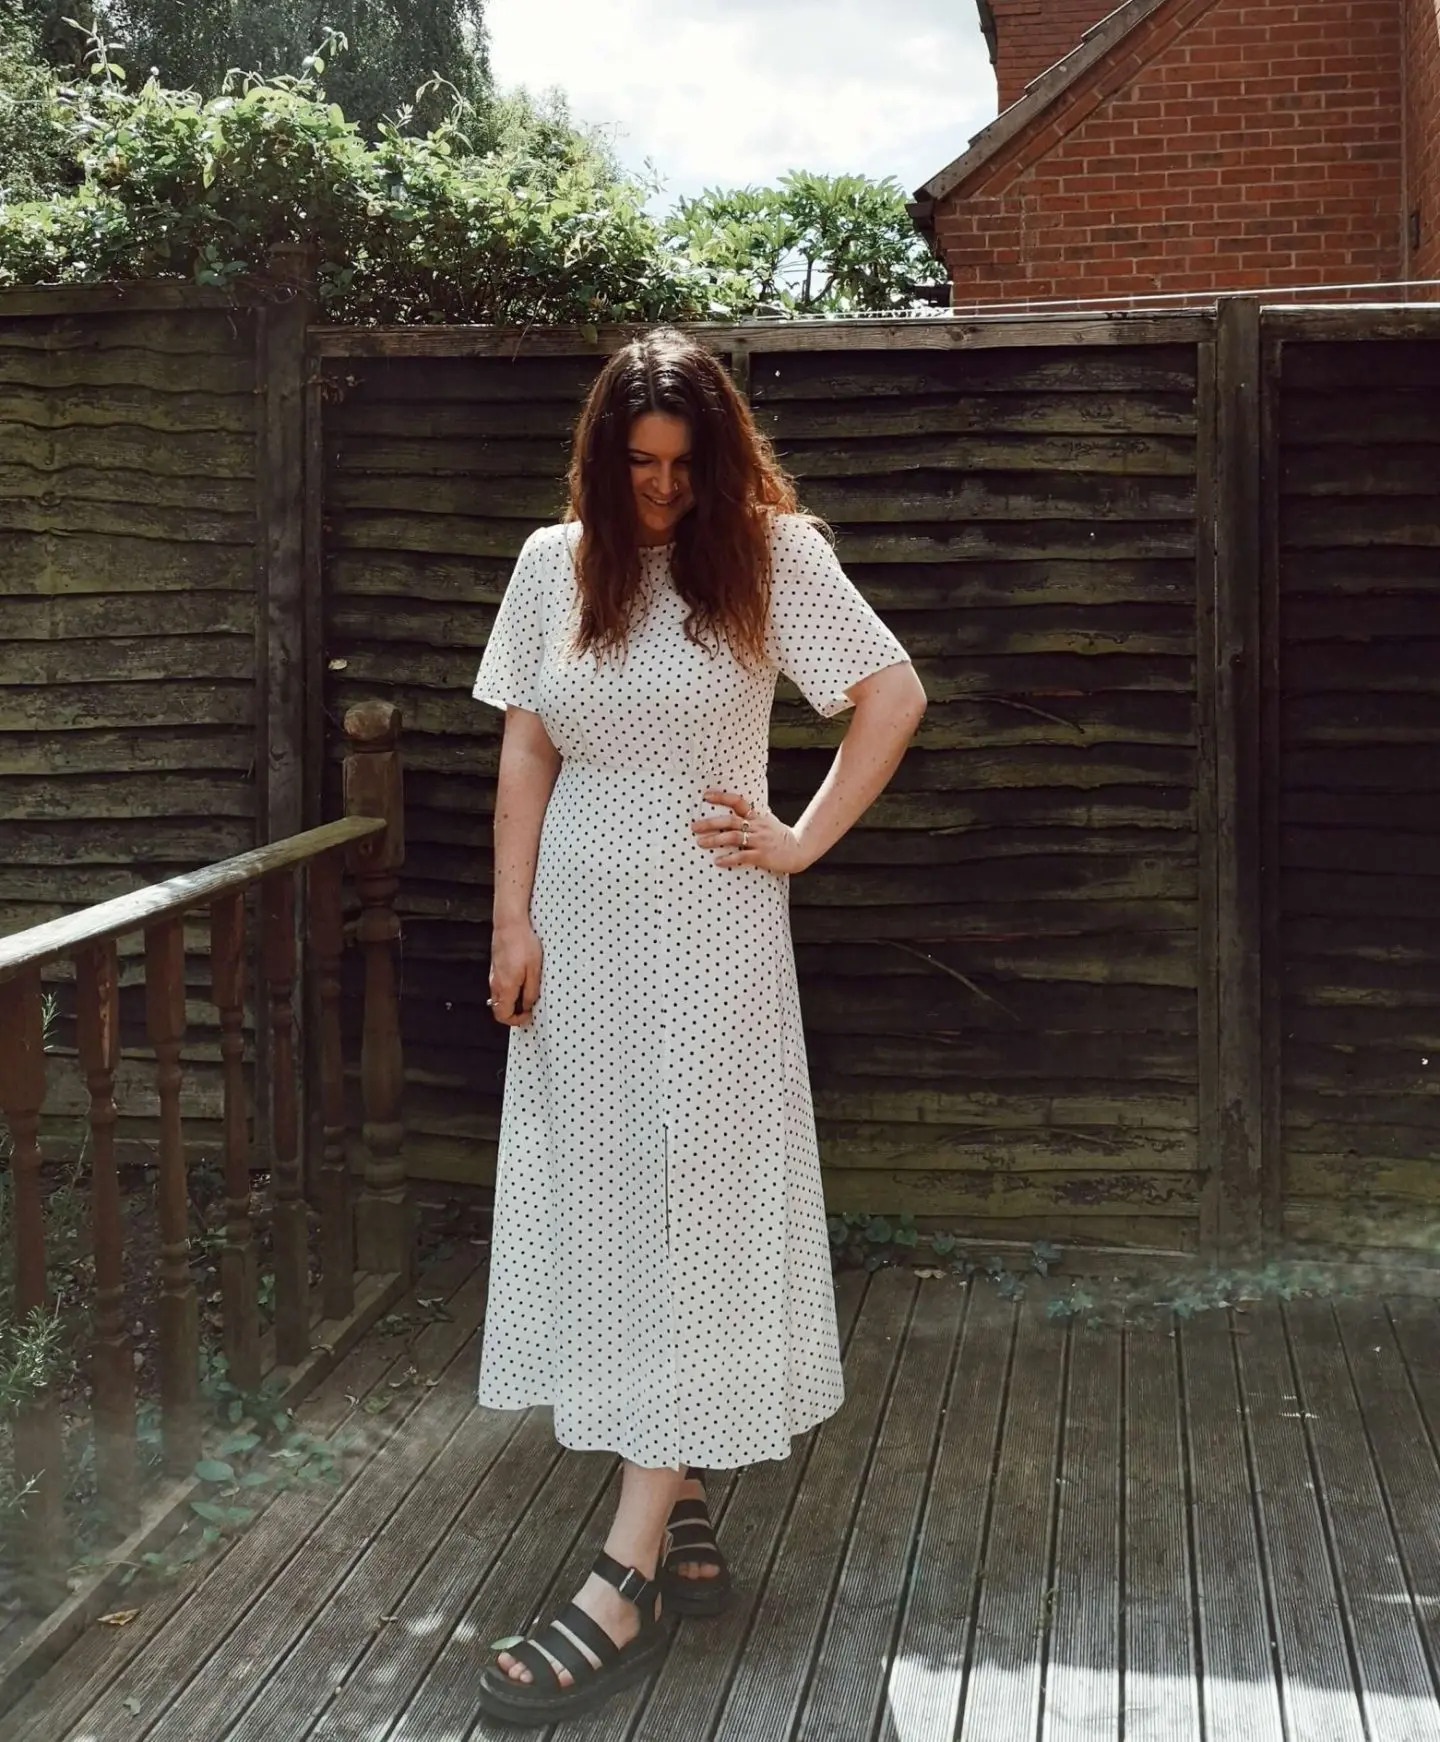 Woman standing in polkadot dress in garden